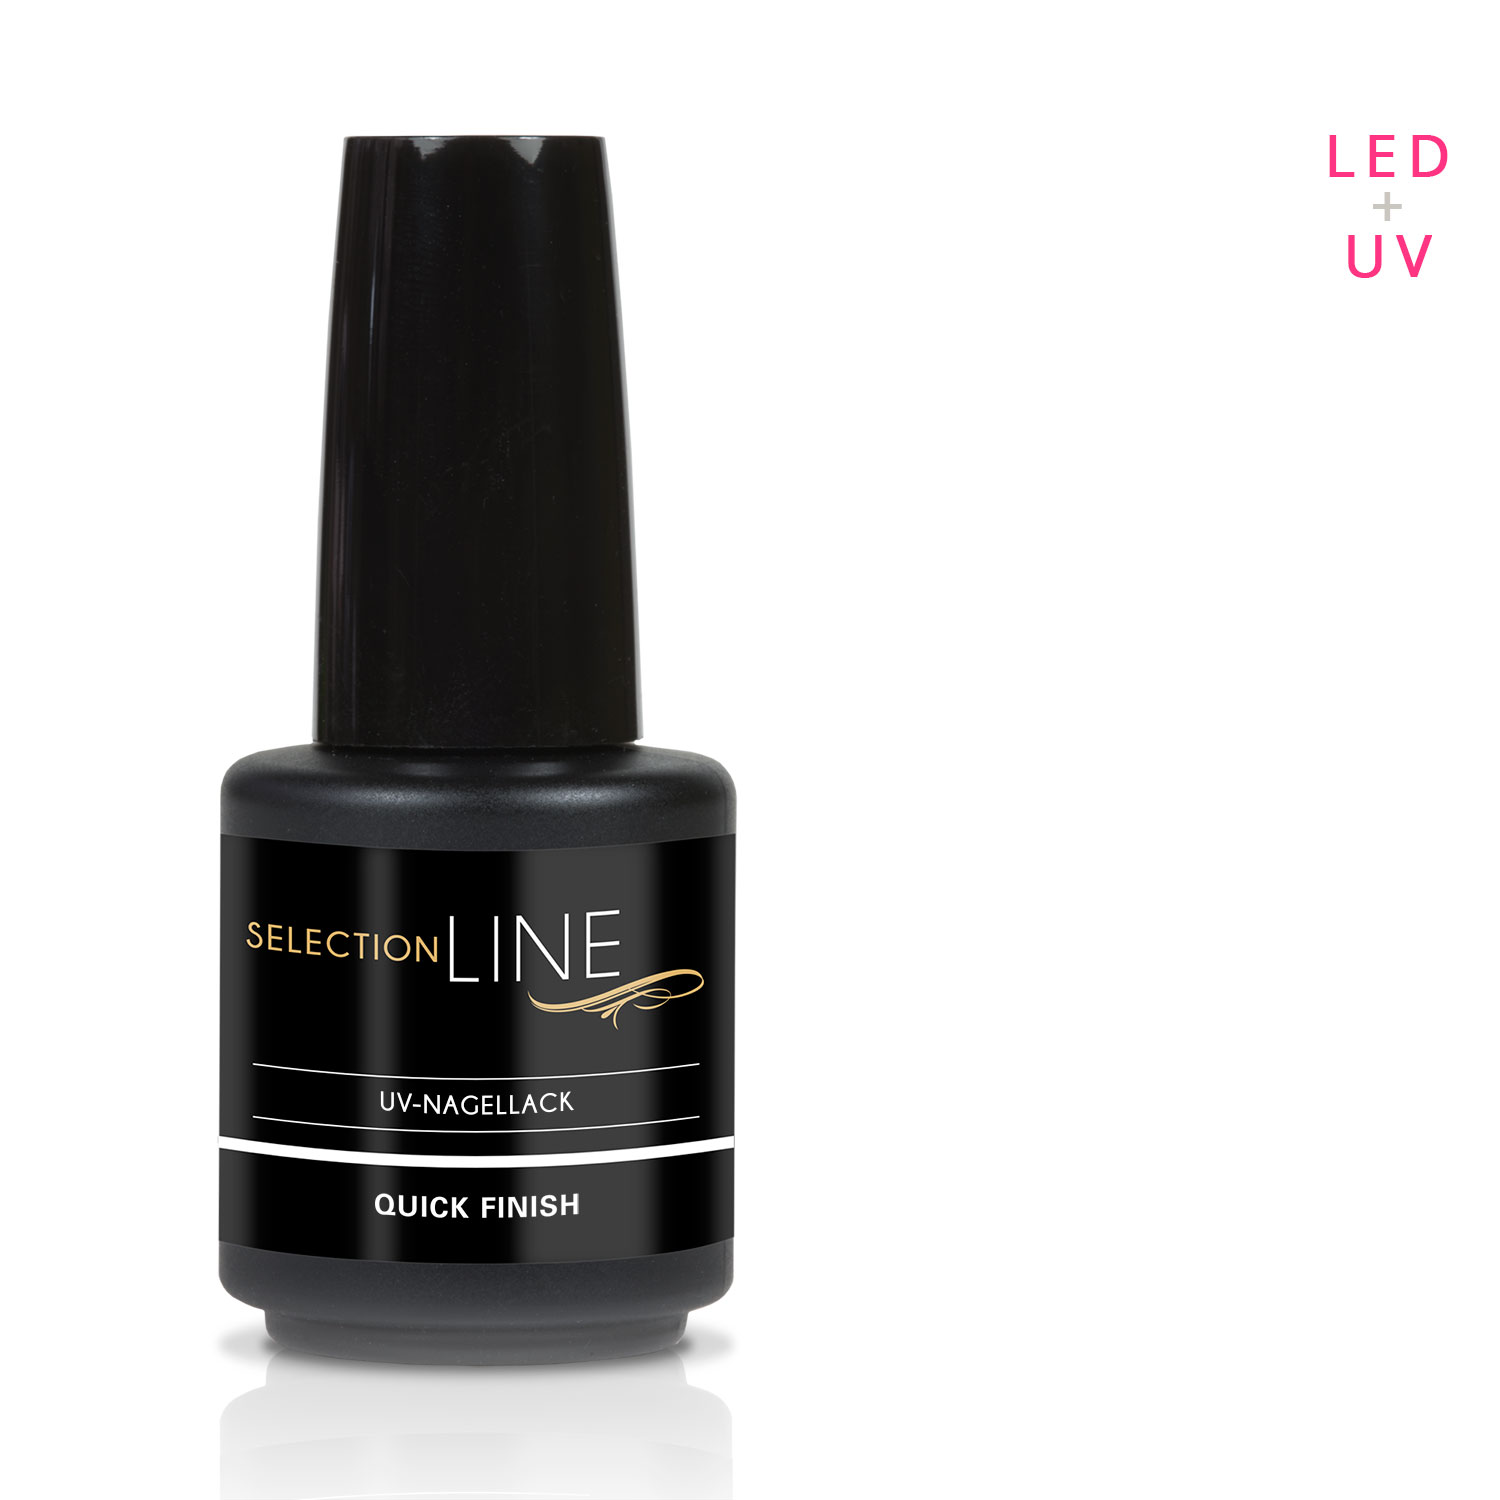 UV LED Nagellack Selection Line Quick Finish 15ml 